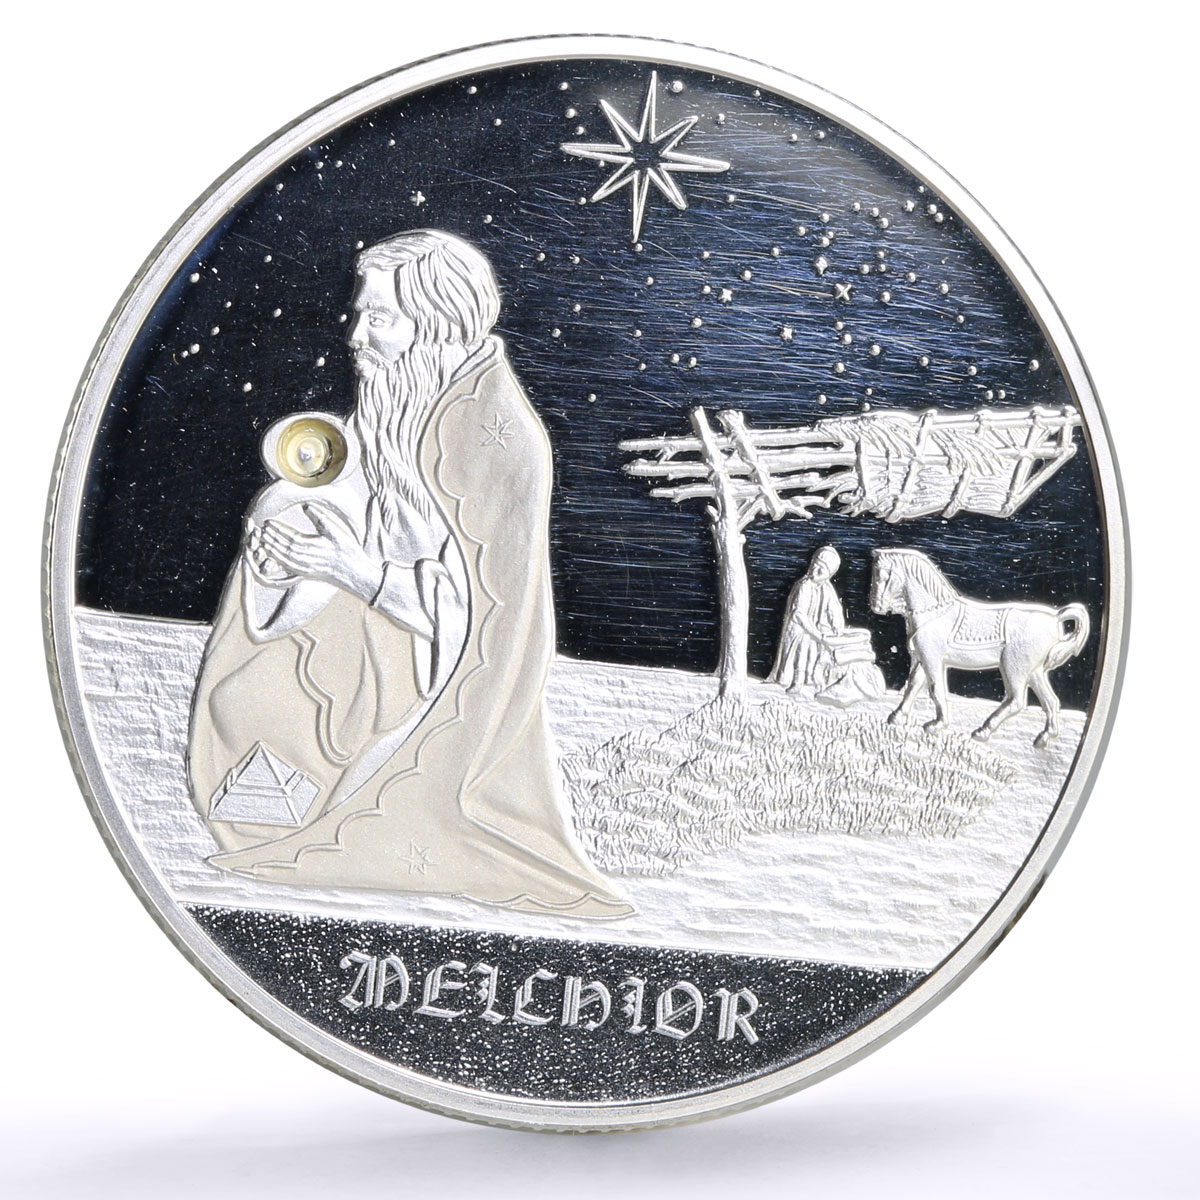 Order of Malta 500 liras Wise Men Biblical Magi Melchior Horse silver coin ND